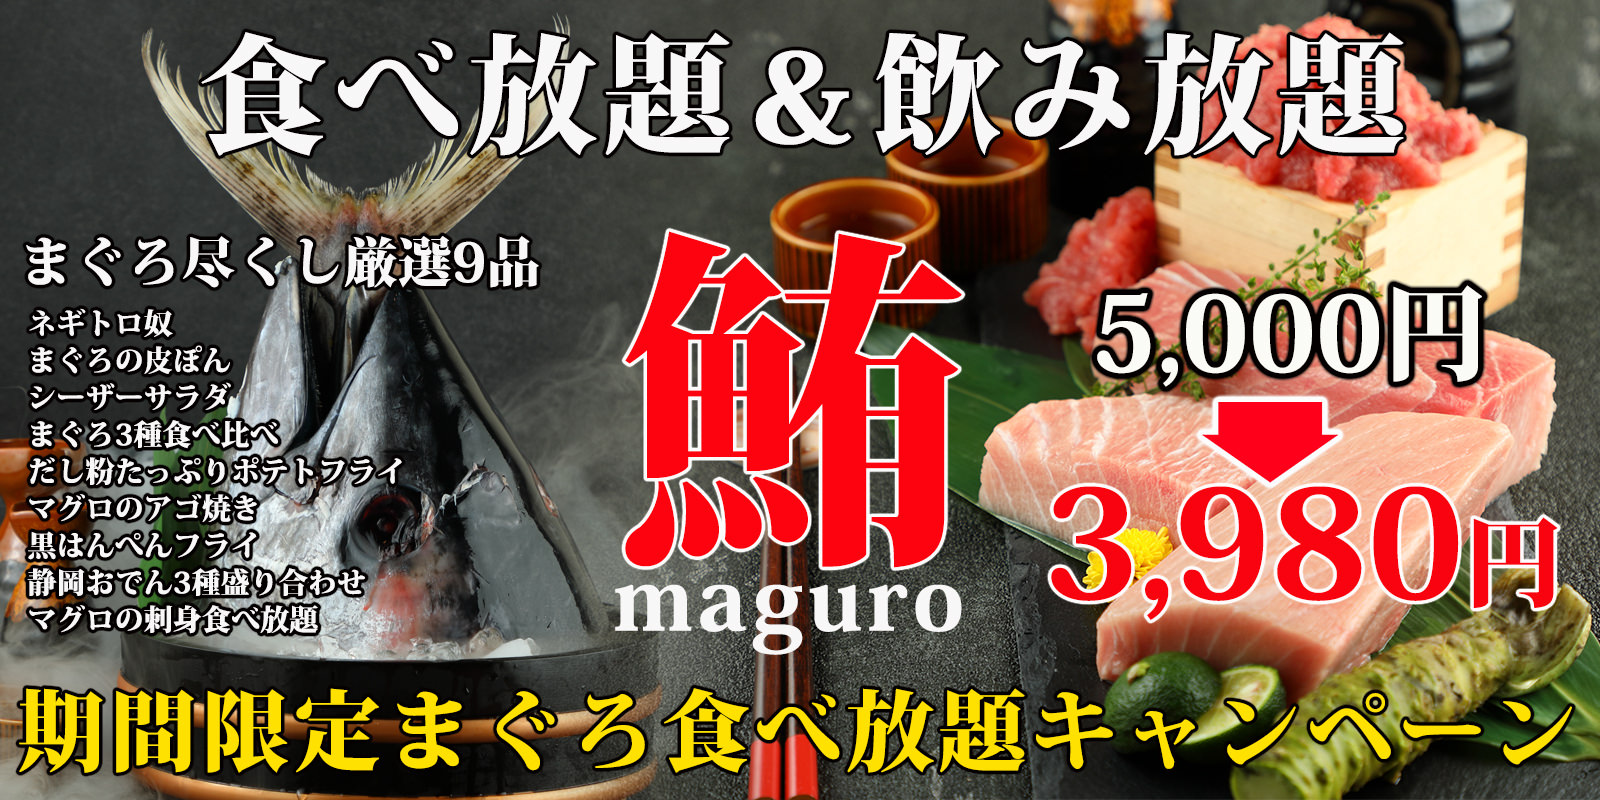 マイナス気温に応じて食事代を値引き！北海道の焼き肉屋
「楽しい煉屋」が“凍れ！たいかん焼肉”特別企画を開催